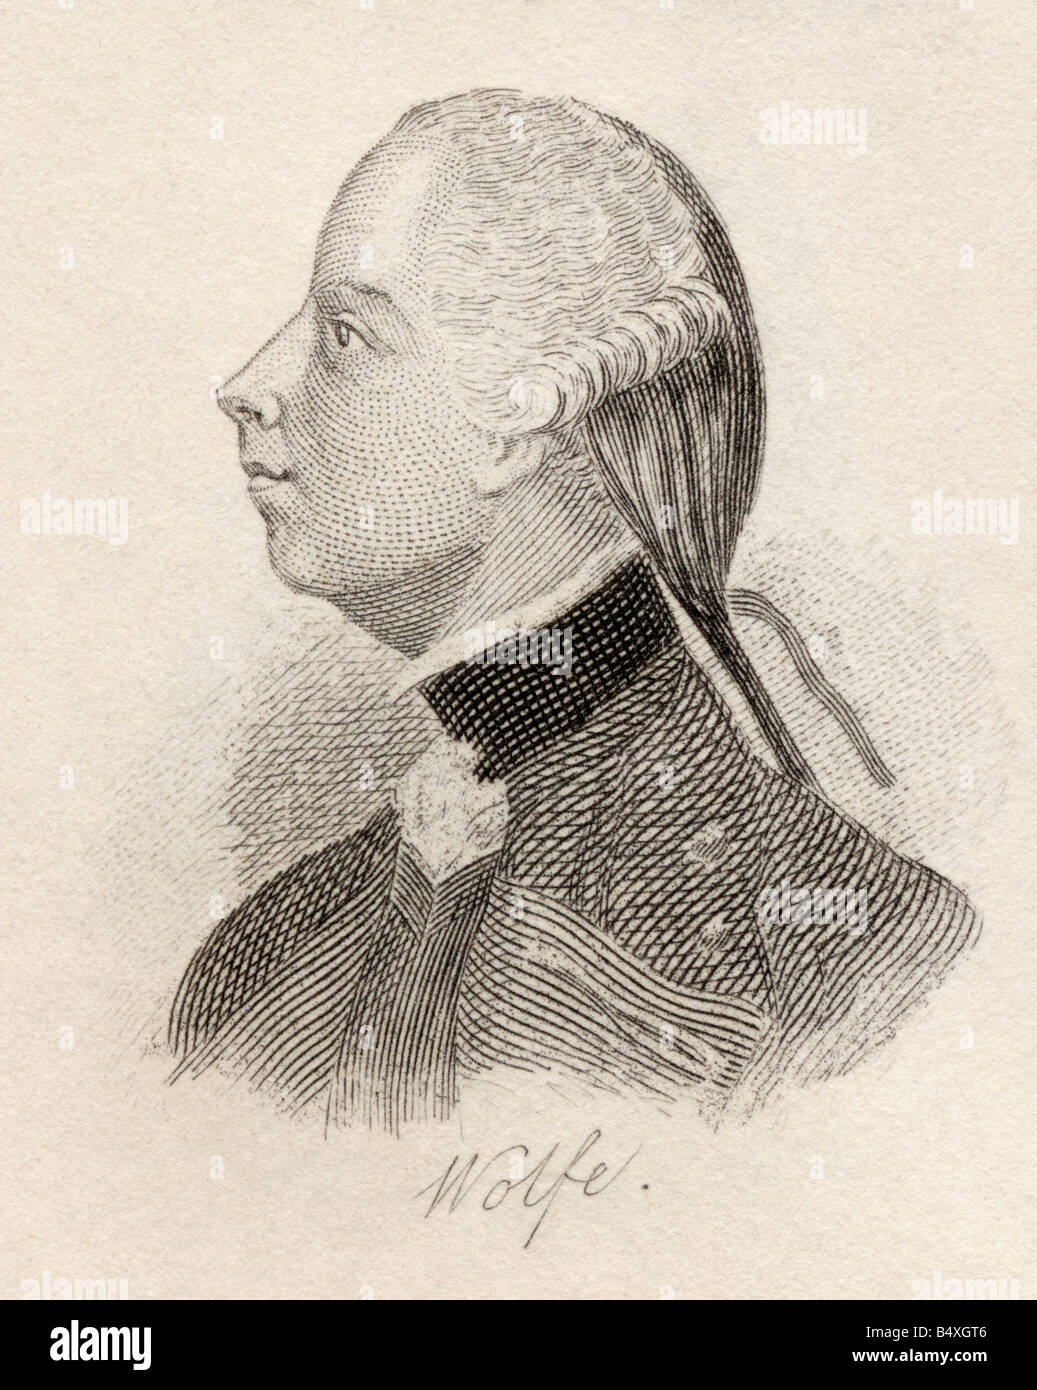 Général James Wolfe, 1727 - 1759. Officier et général de l'armée britannique. Tiré du livre Crabbs Historical Dictionary, publié en 1825. Banque D'Images